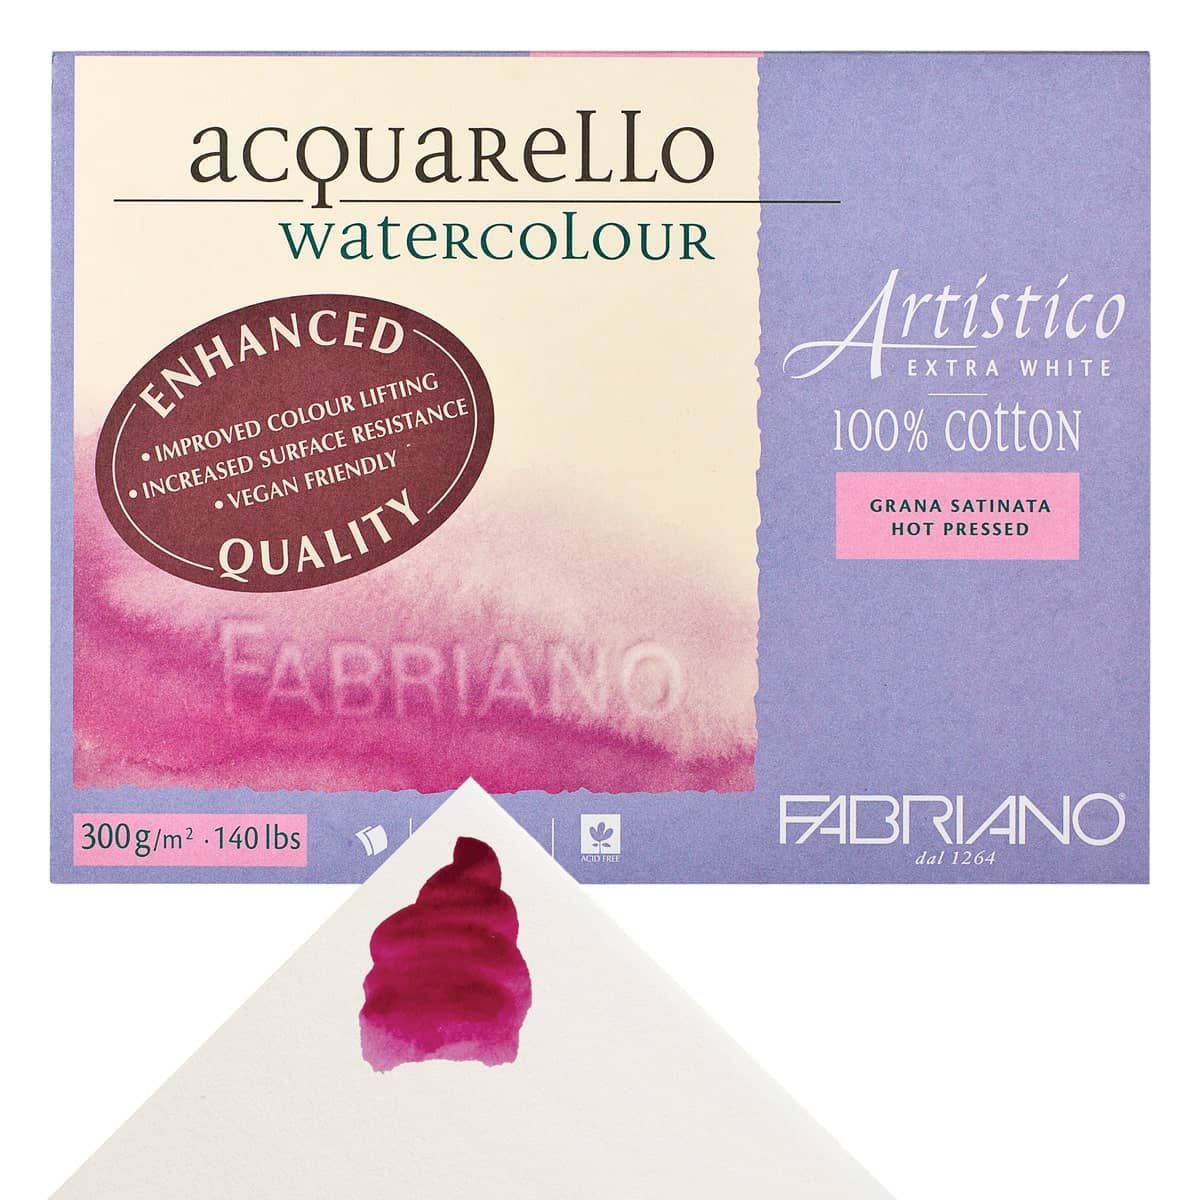 Fabriano Artistico Extra White Watercolor Block, 140 lb./300 gsm, Cold  Press, 25 Sheets, 5 x 7 